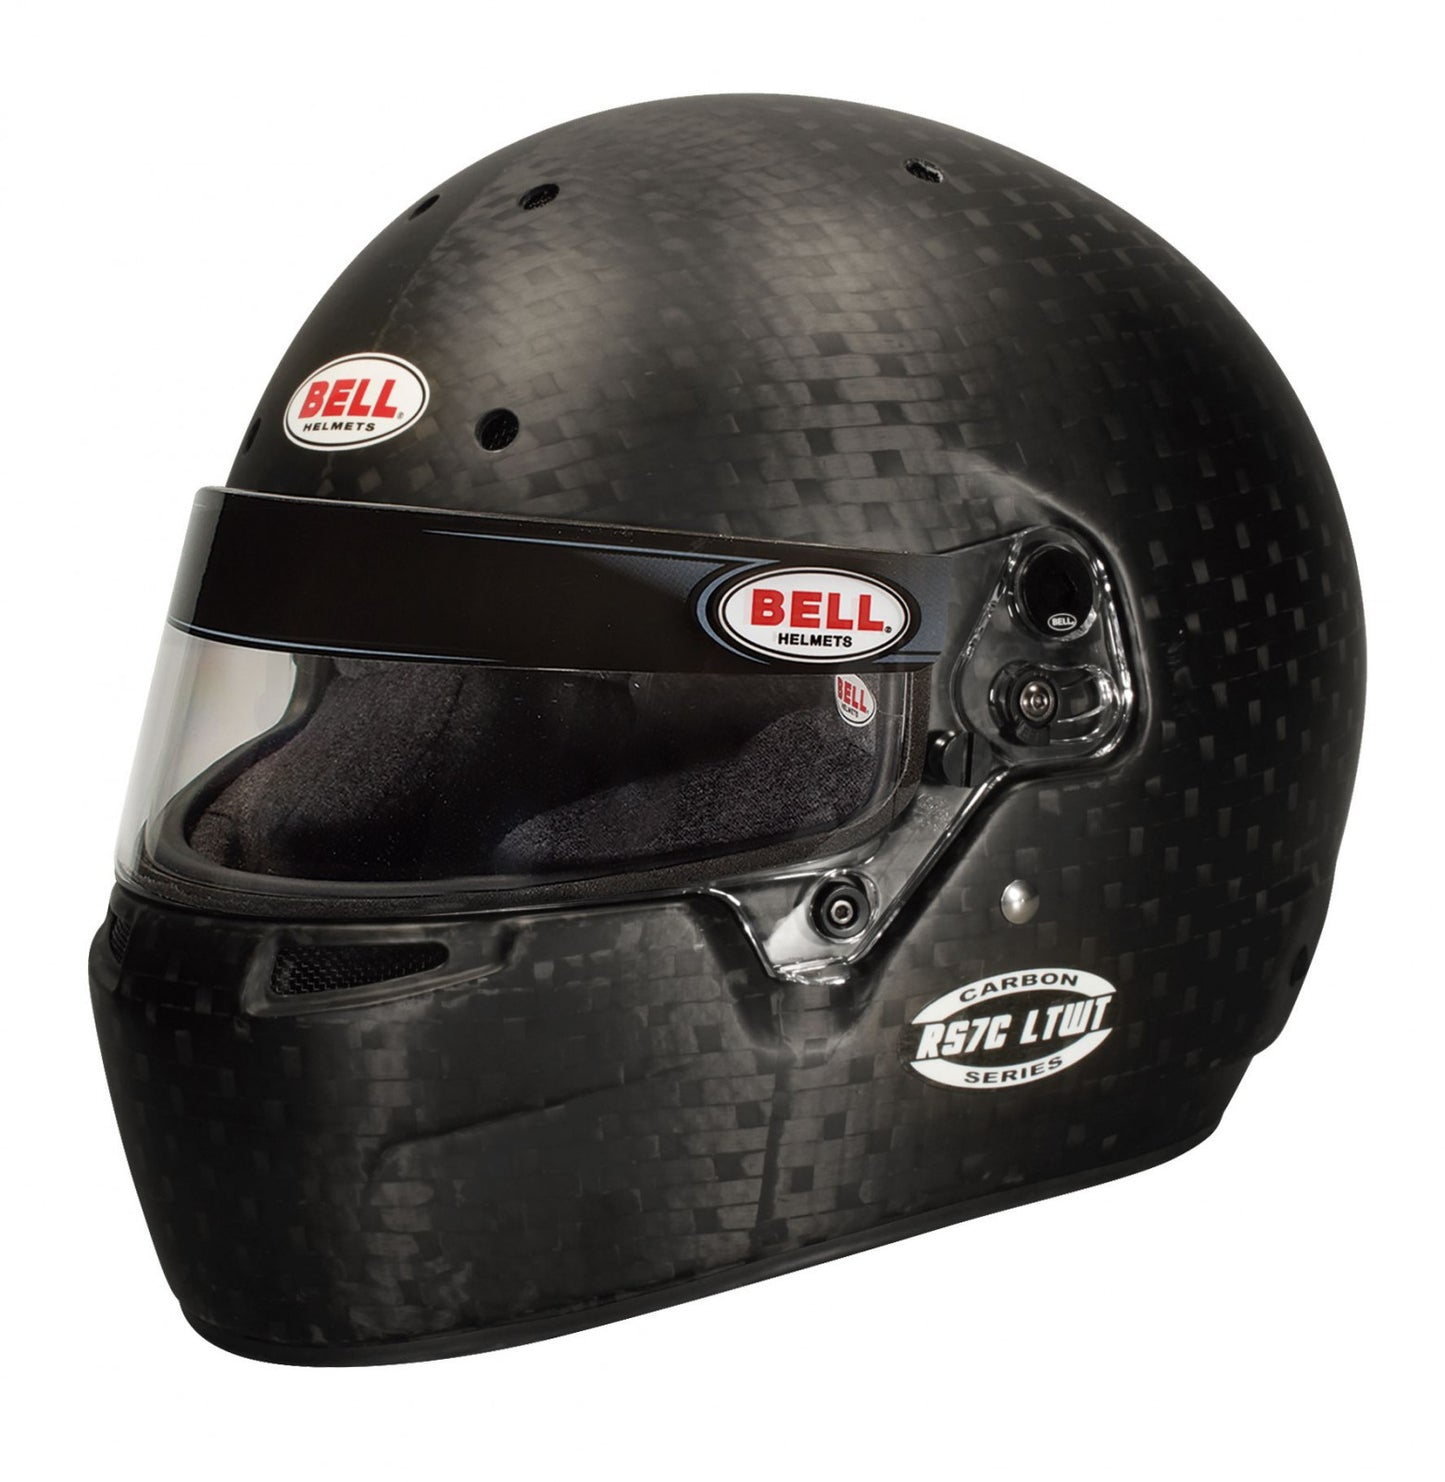 Bell Racing RS7C LTWT Helmet 7 5/8+ (61+ cm)